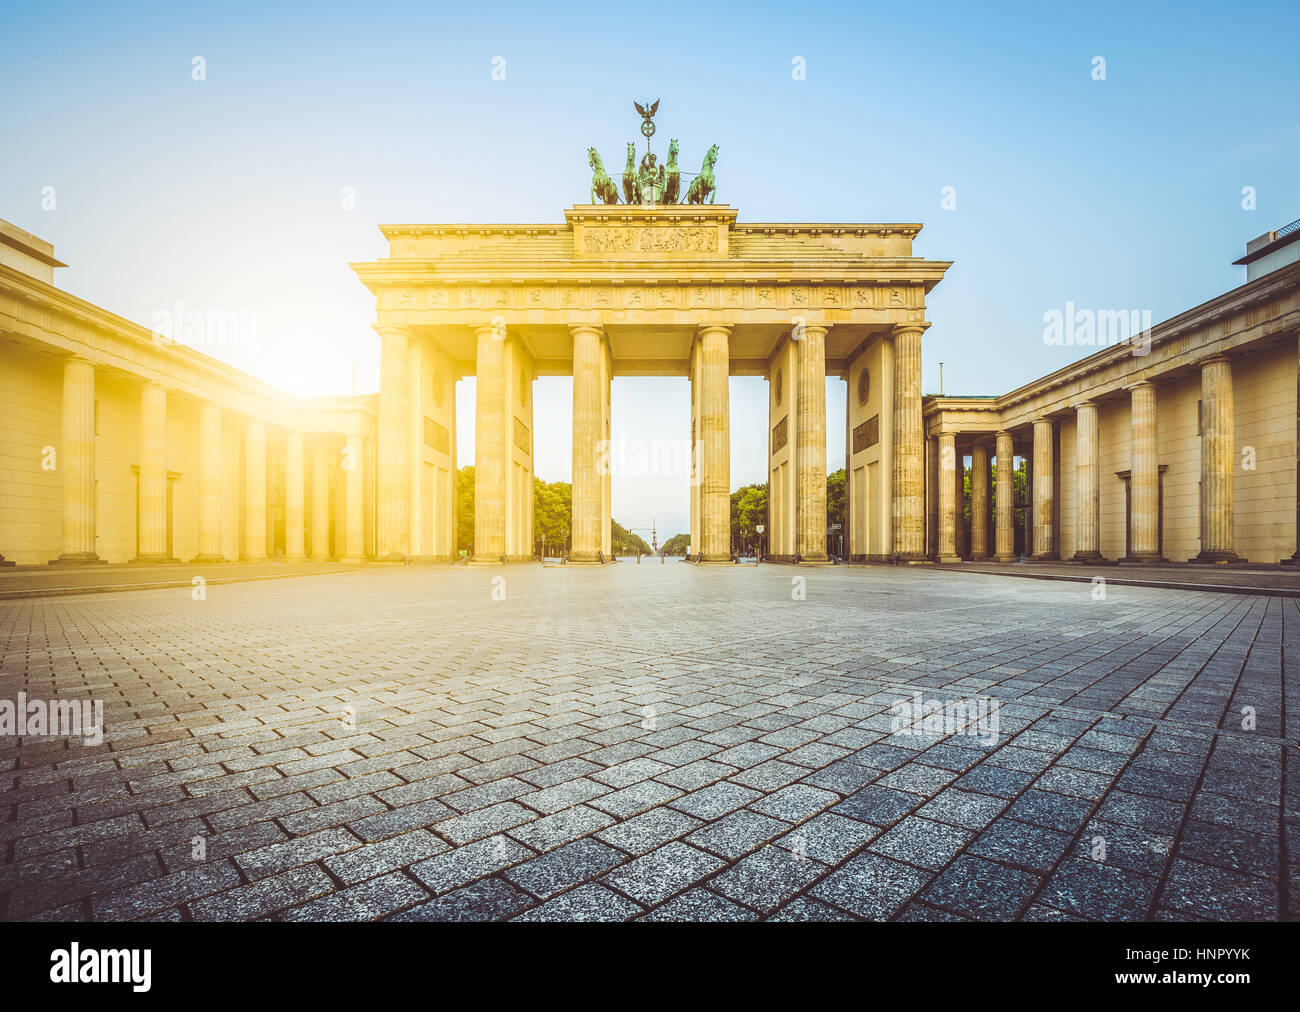 Famosa Porta di Brandeburgo, uno dei più noti monumenti e simboli nazionali della Germania, in bella la luce del mattino al sorgere del sole, Berlin Mitte, Germania Foto Stock